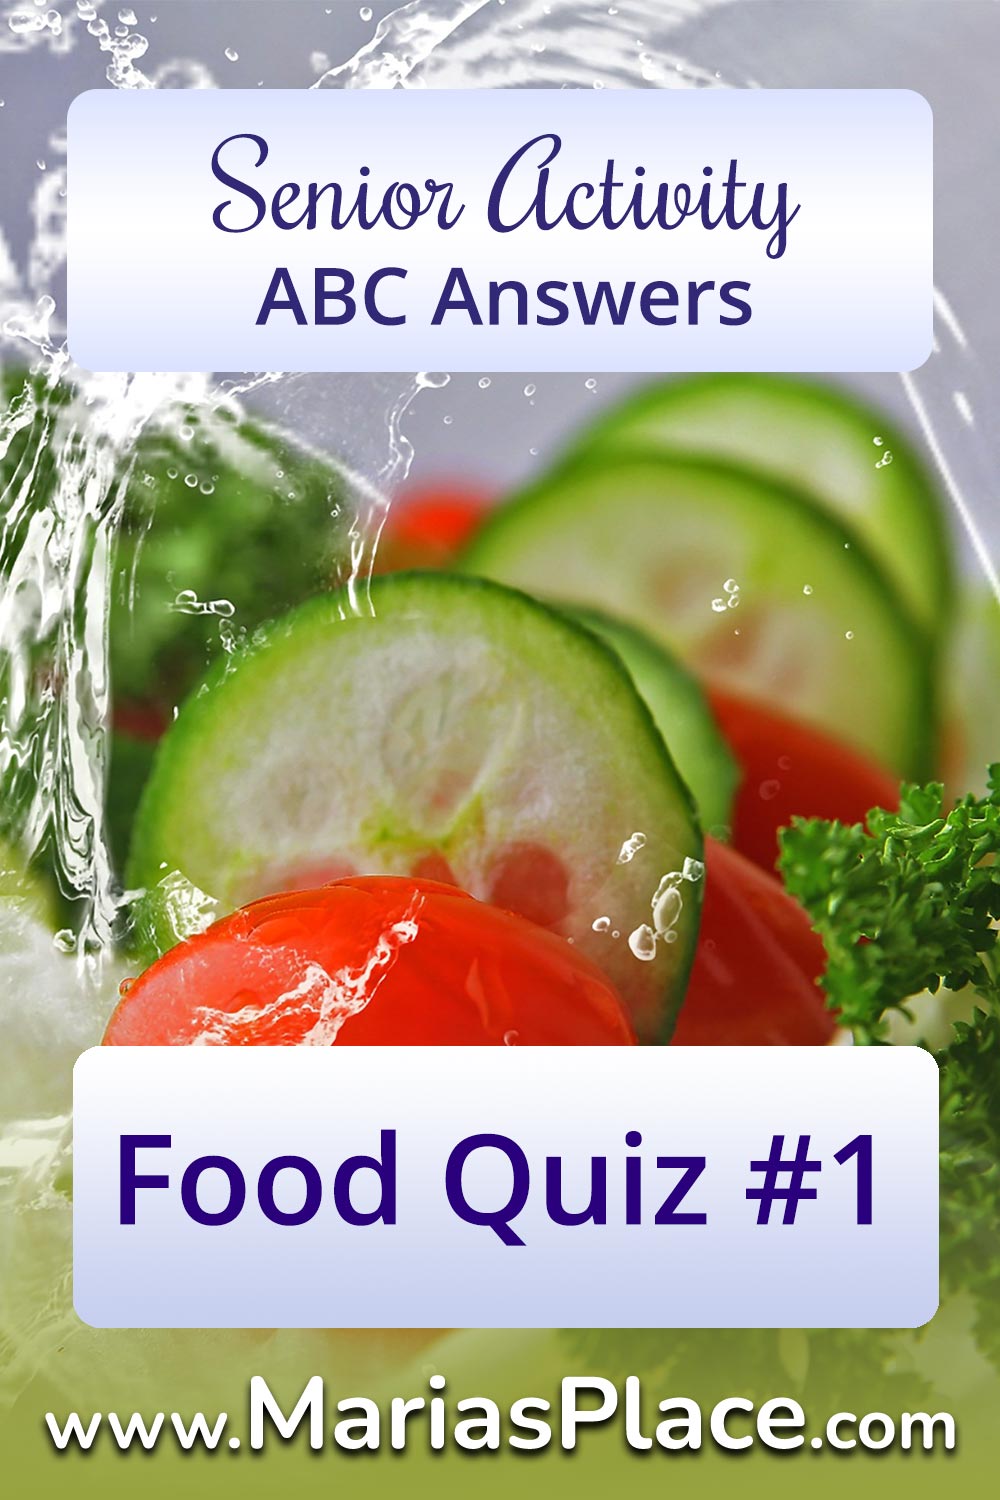 Food Quiz #1